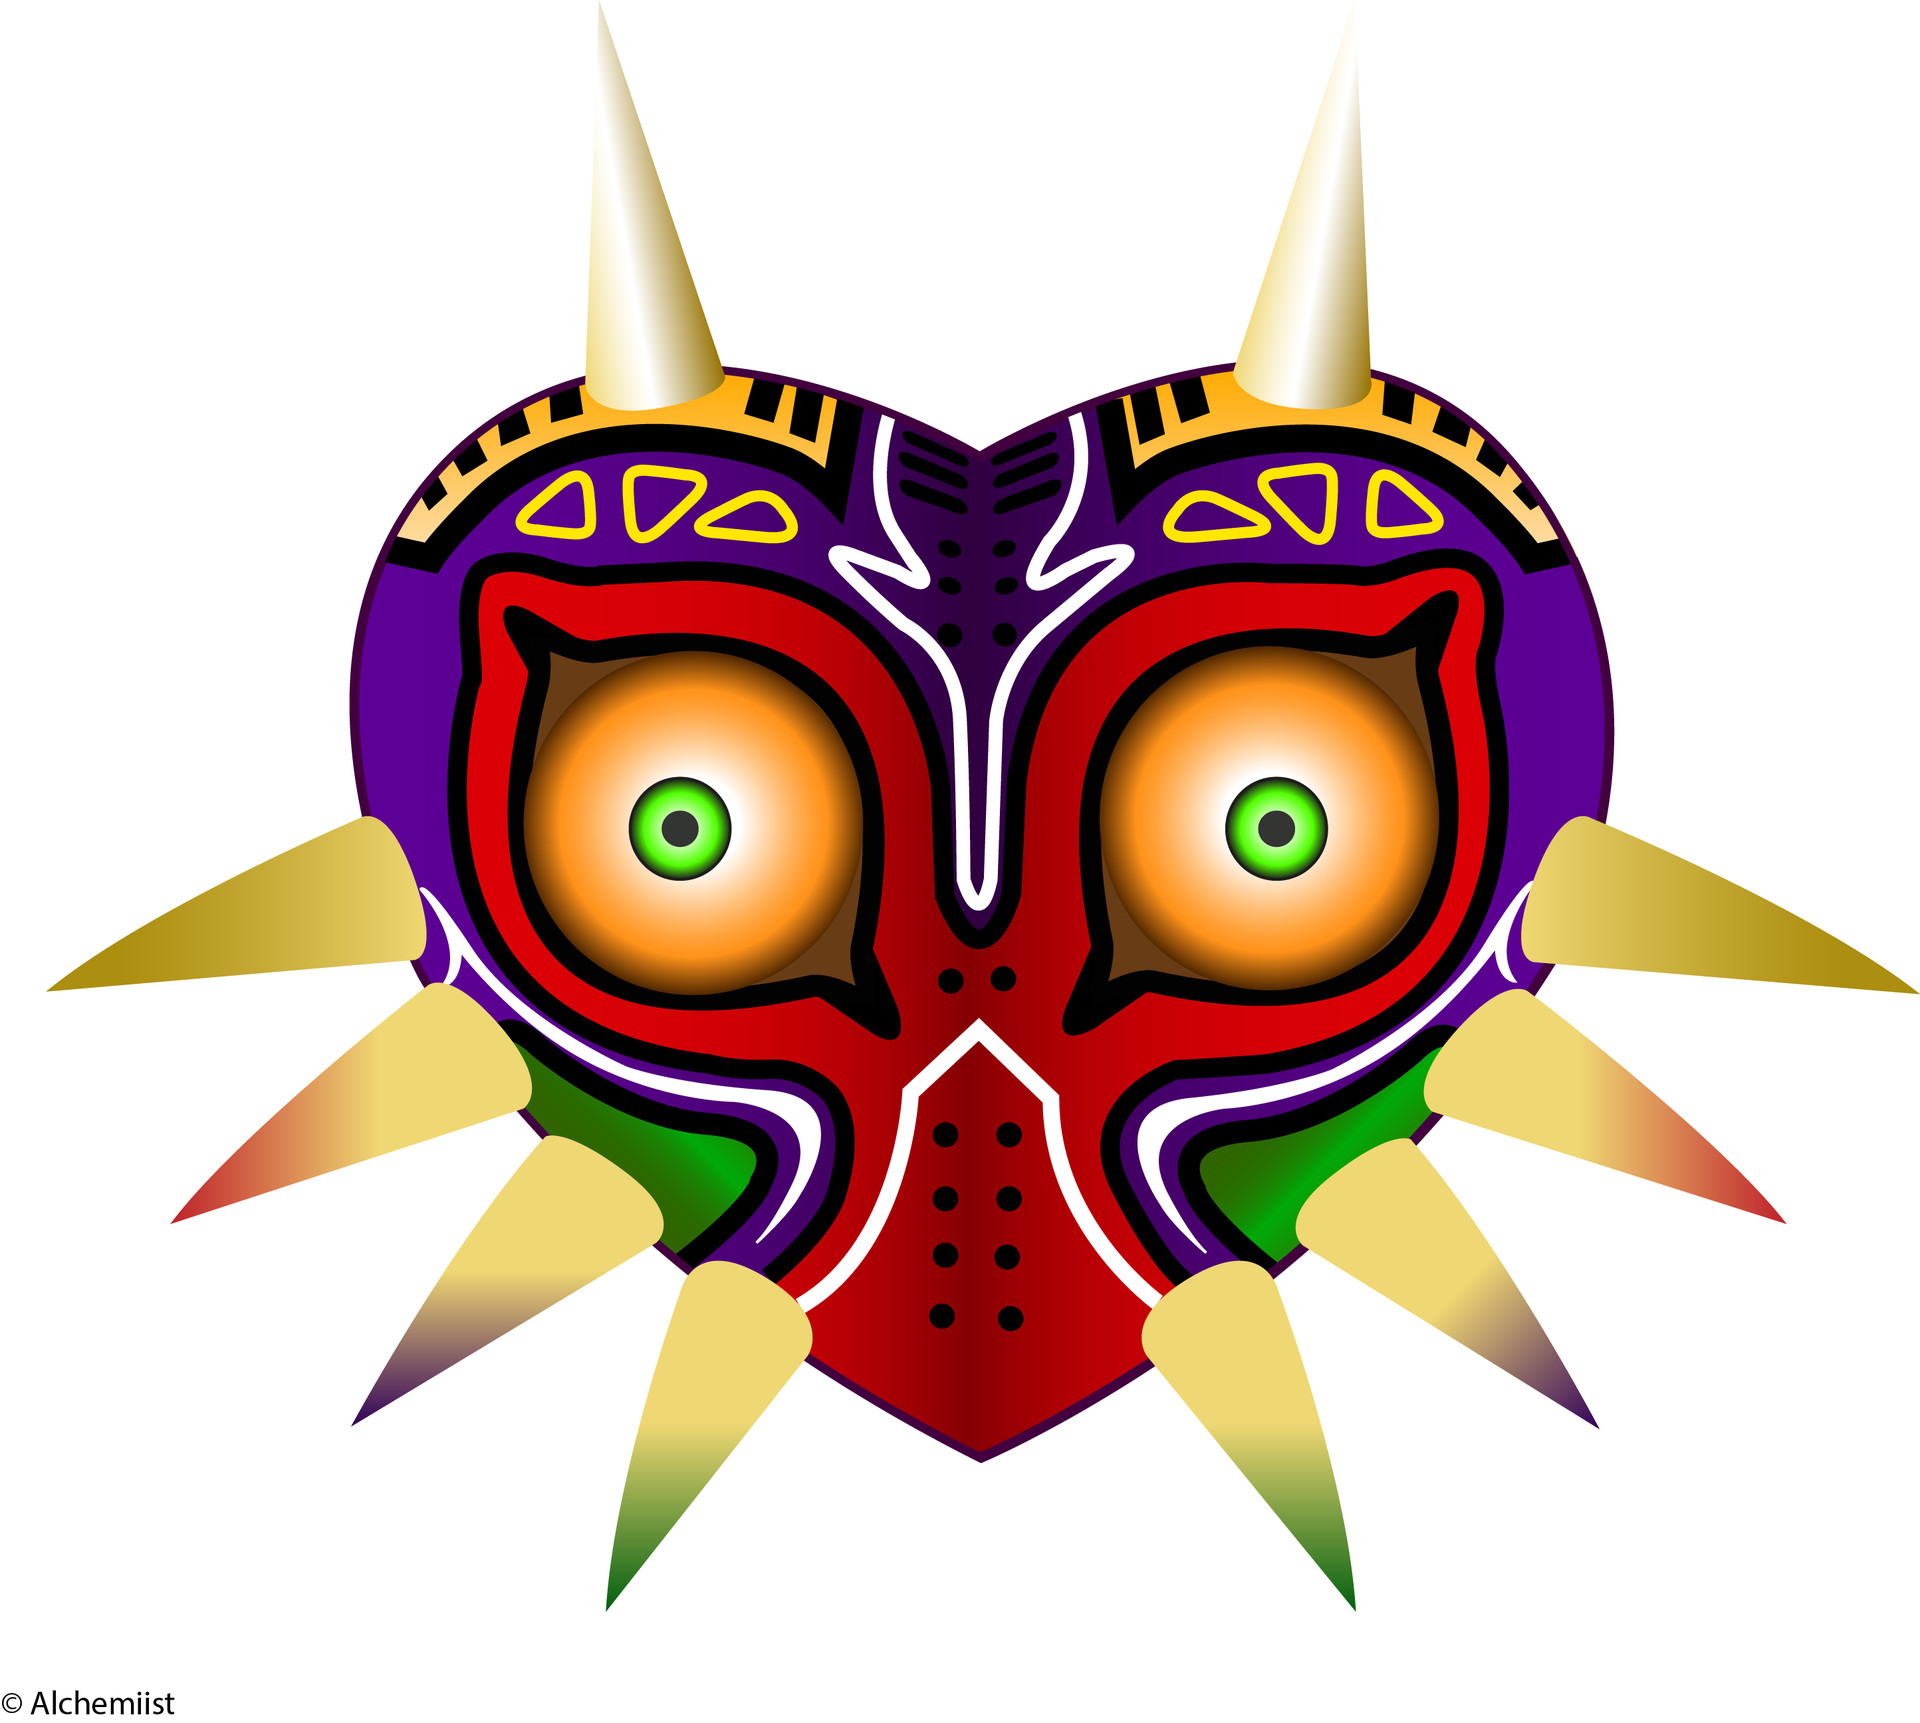 I choose Majora's Mask because I have a certain interest in masks. 